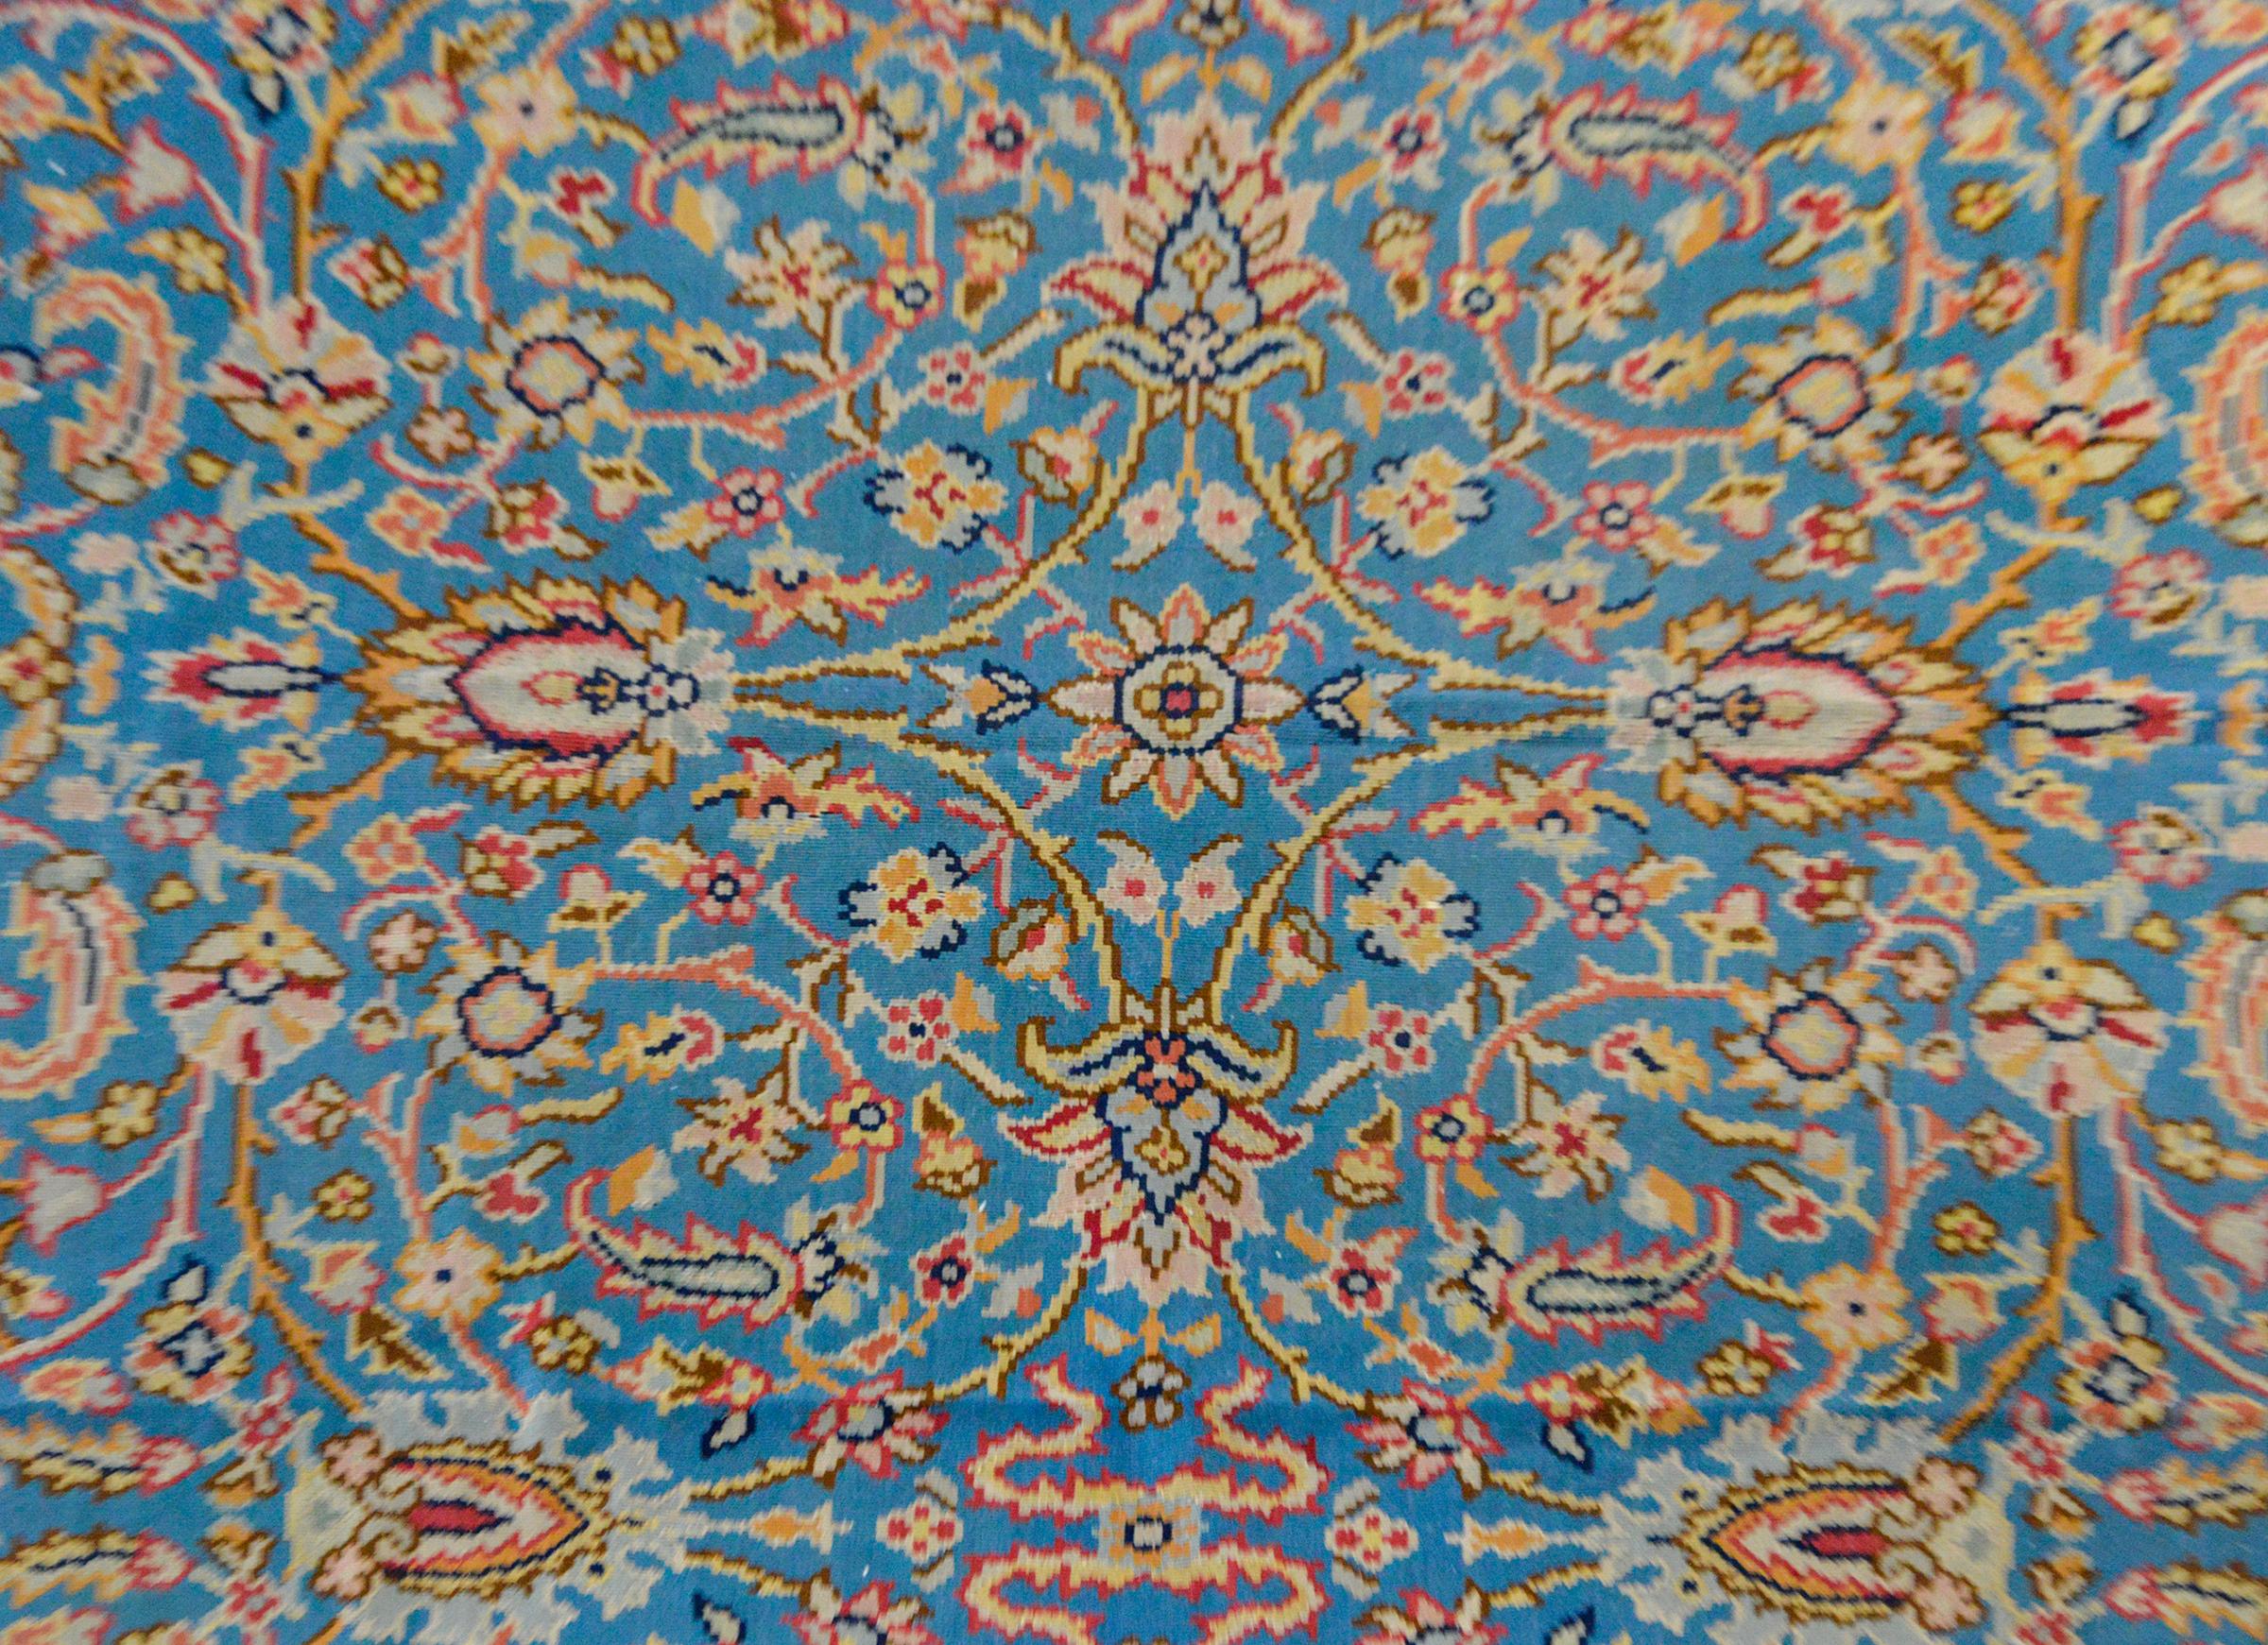 Ein süßer alter Balkhan-Kelim-Teppich mit einem gespiegelten Blumenmuster in Pastellrosa, Gelb, Blau und Orange auf hellblauem Hintergrund. Die Bordüre ist breit und mit mehreren großflächigen, floralen Partnerstreifen versehen.